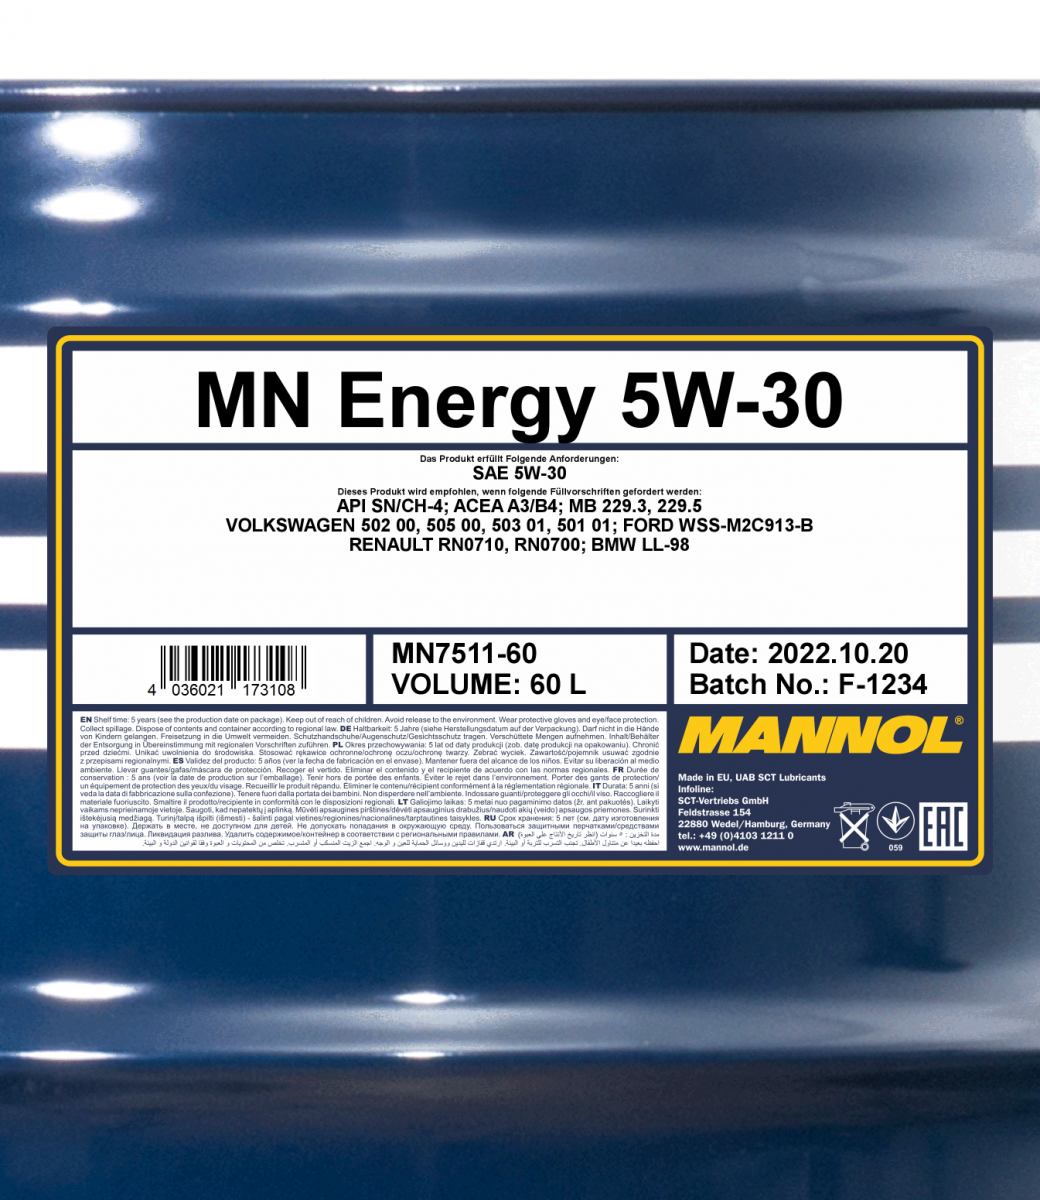 Energy 5W-30 API SN/CH-4